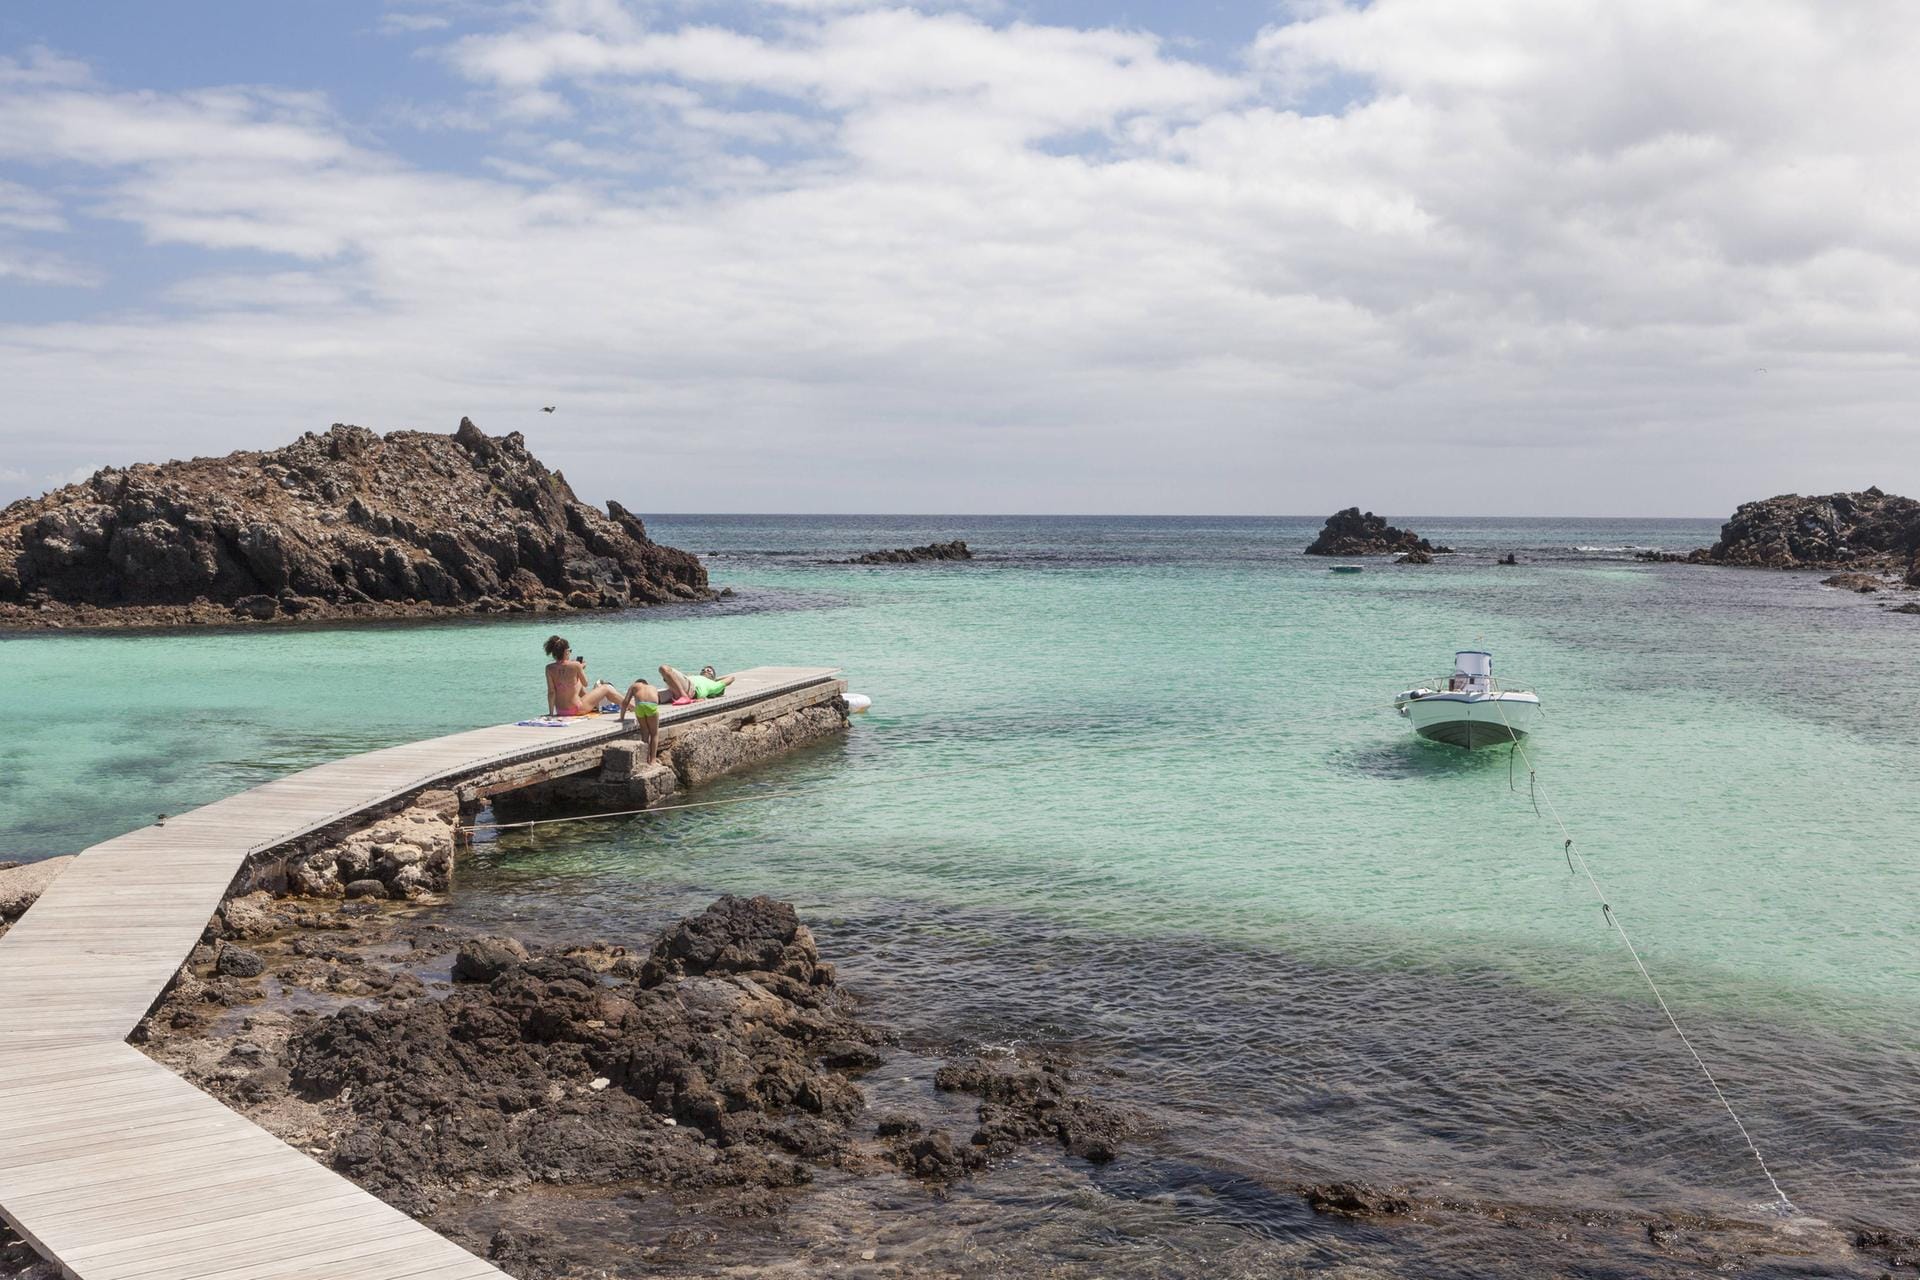 Lobos: Das Naturreservat ist eine zwanzigminütige Bootsfahrt von Fuerteventura entfernt.